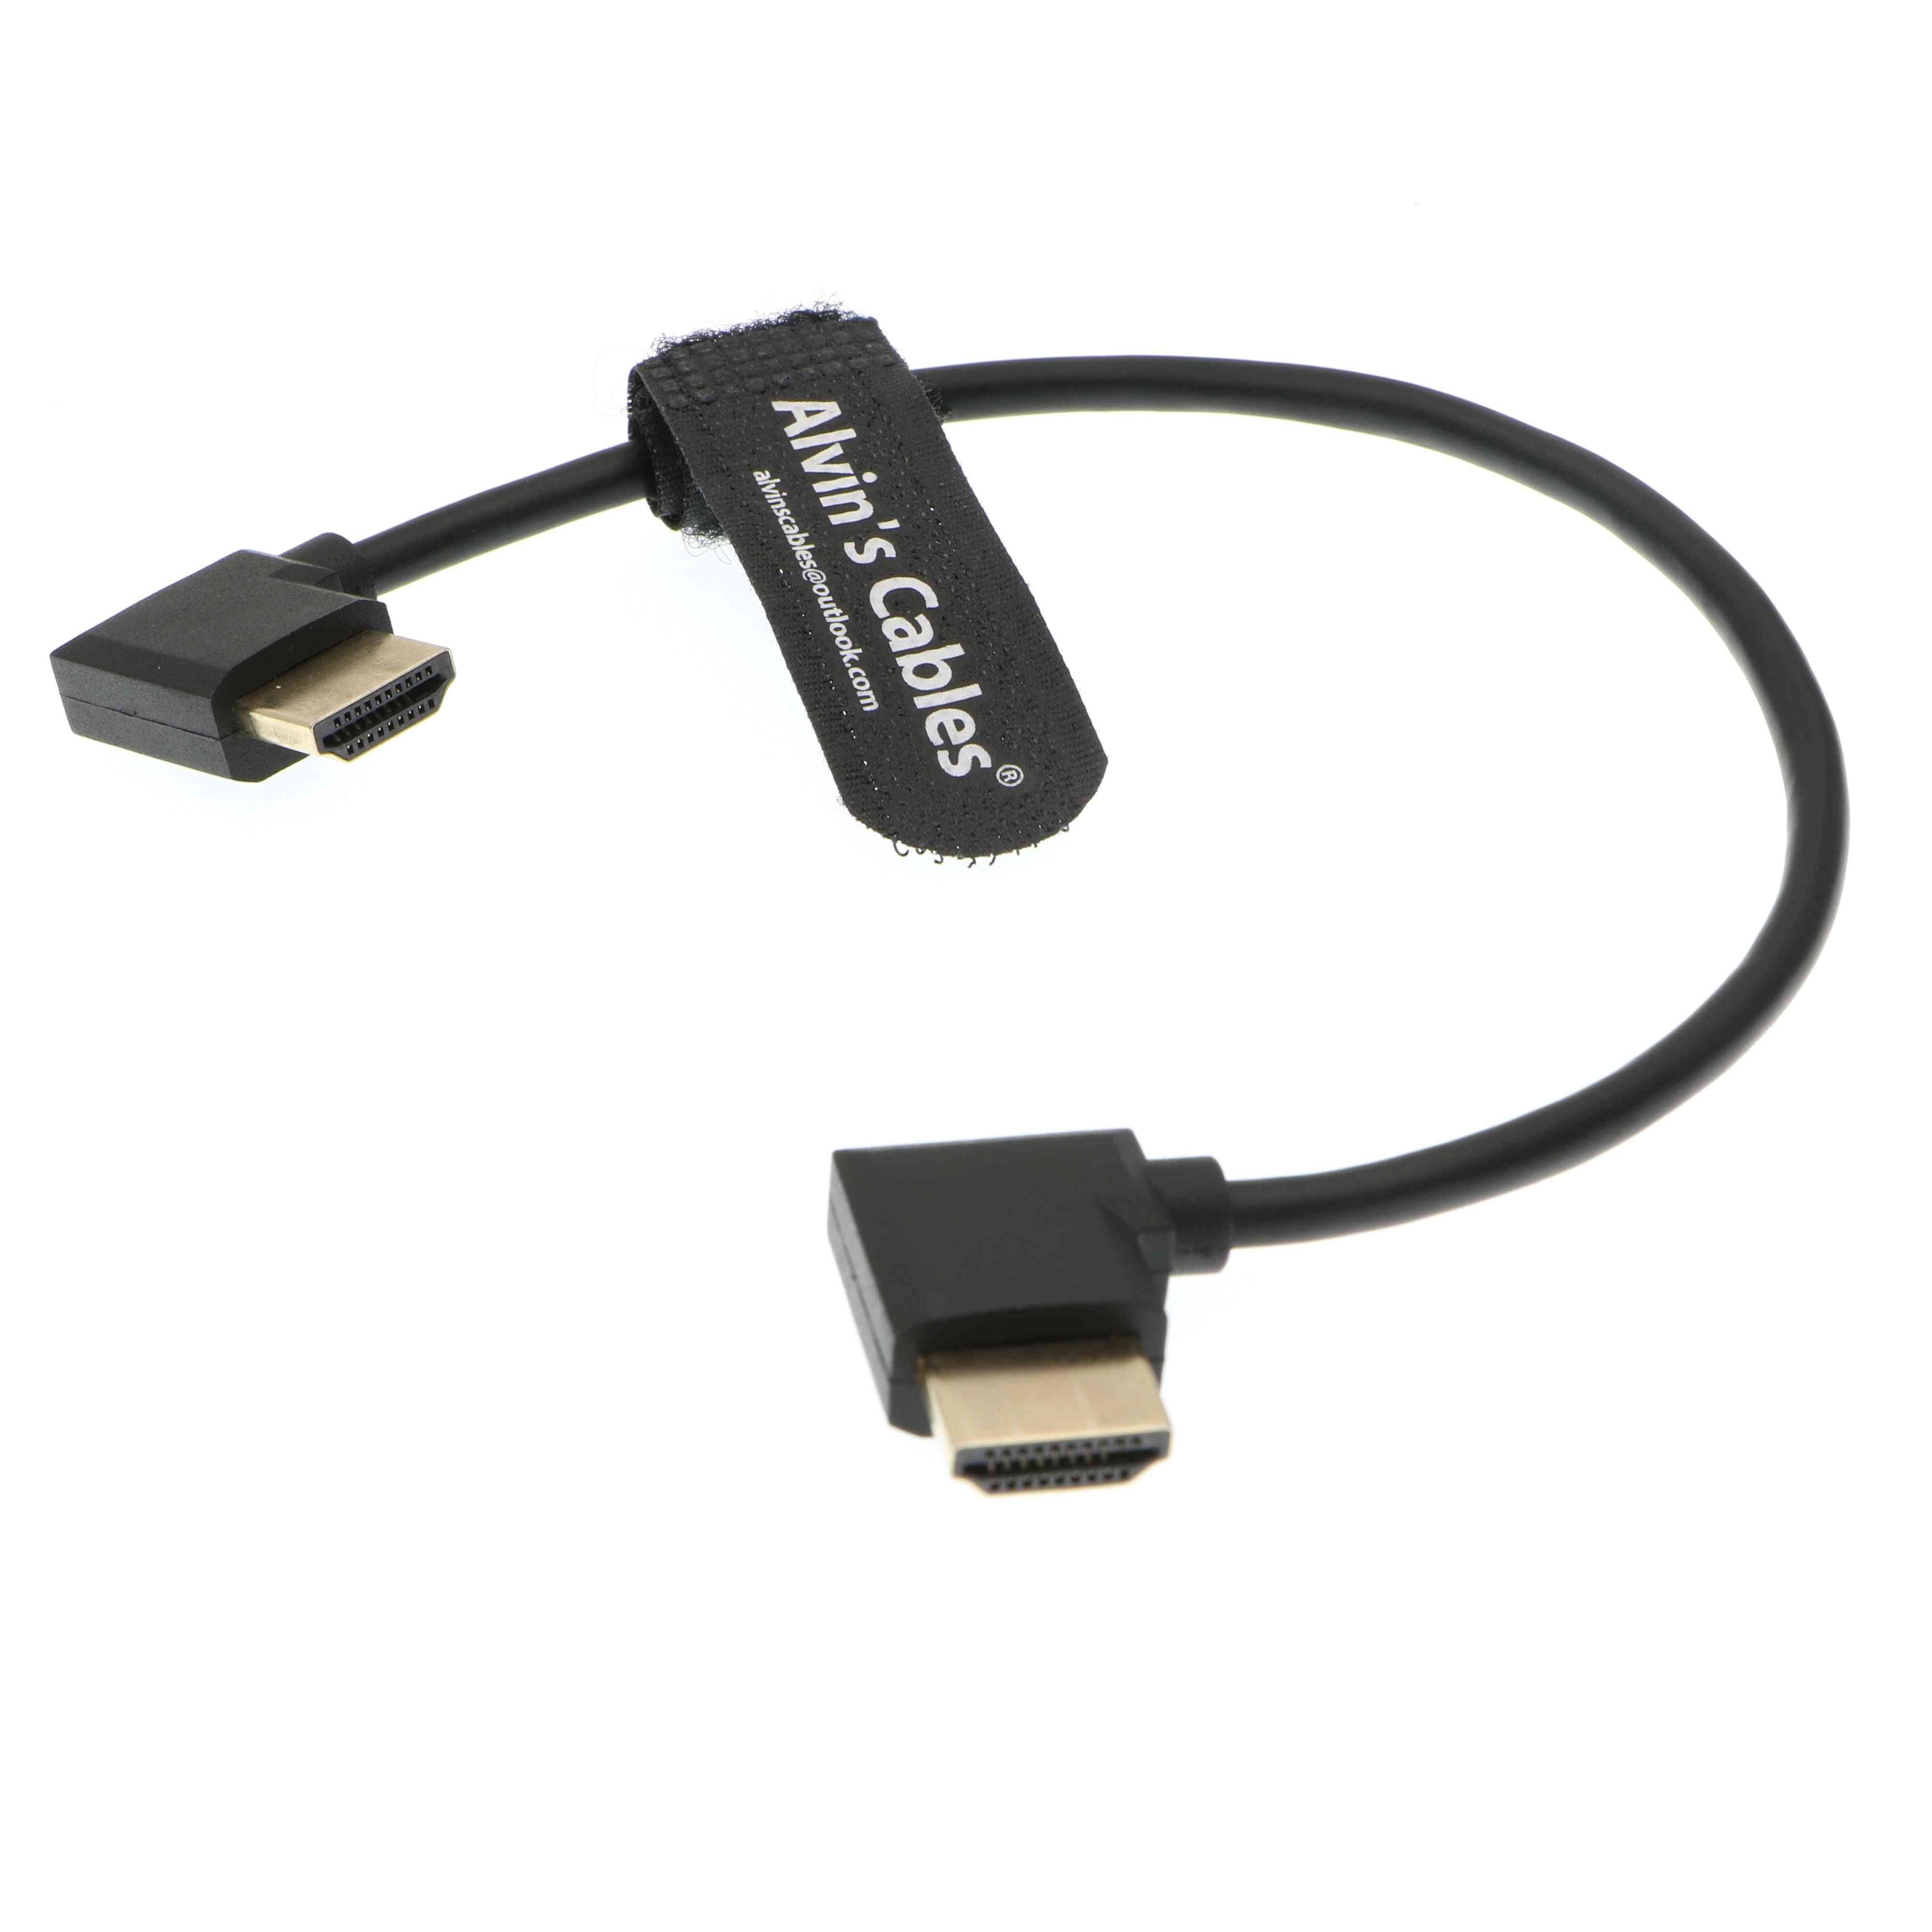 Câbles d'Alvin Z Cam E2 L Forme Câble HDMI Câble HDMI Haute Vitesse à Angle Droit pour Moniteur Portkeys BM5 - 30cm